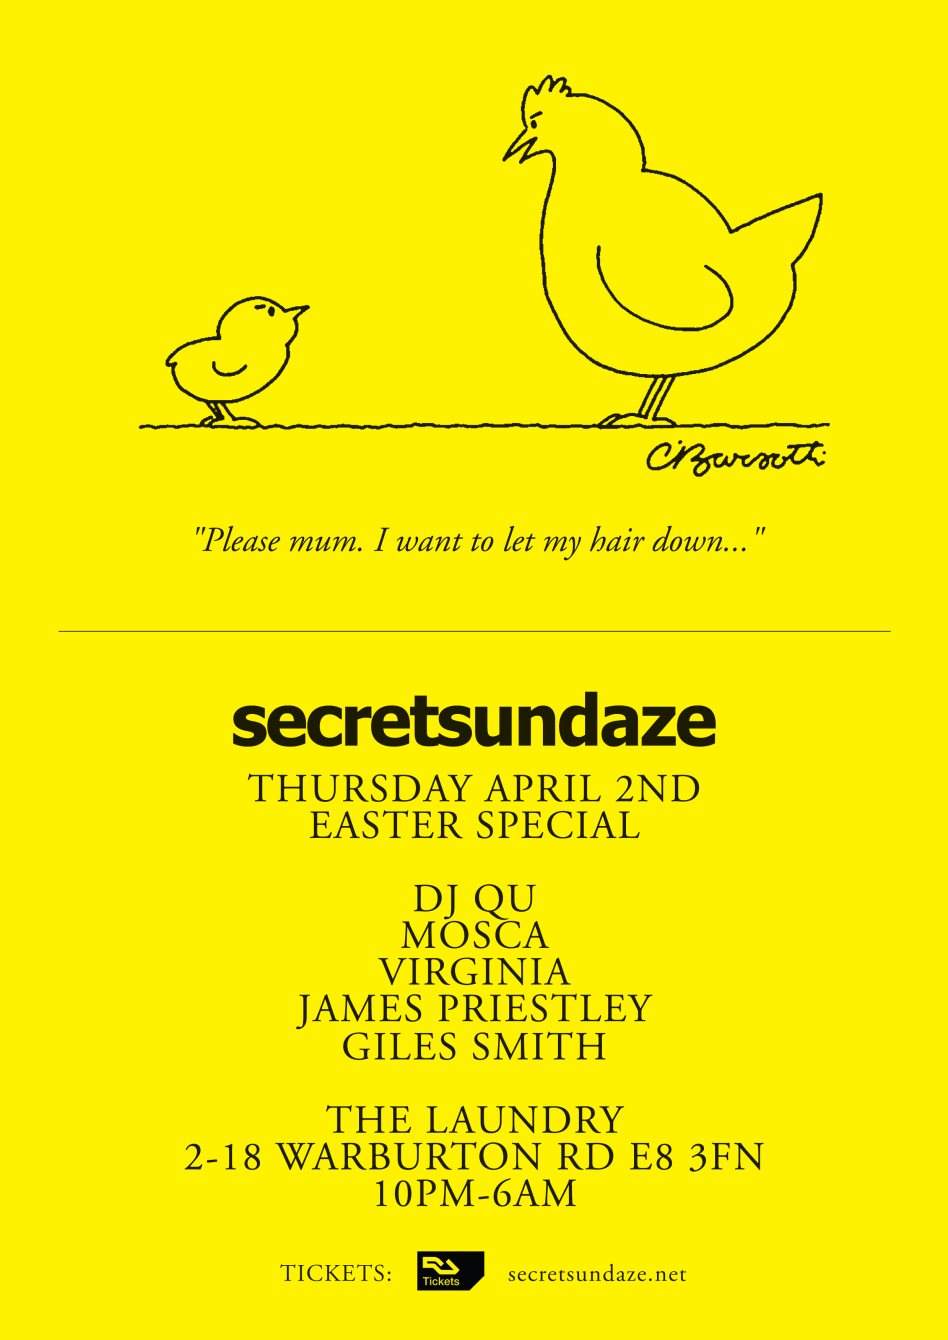 Secretsundaze Easter Special with DJ Qu, Mosca, Virginia, James Priestley & Giles Smith - Página trasera